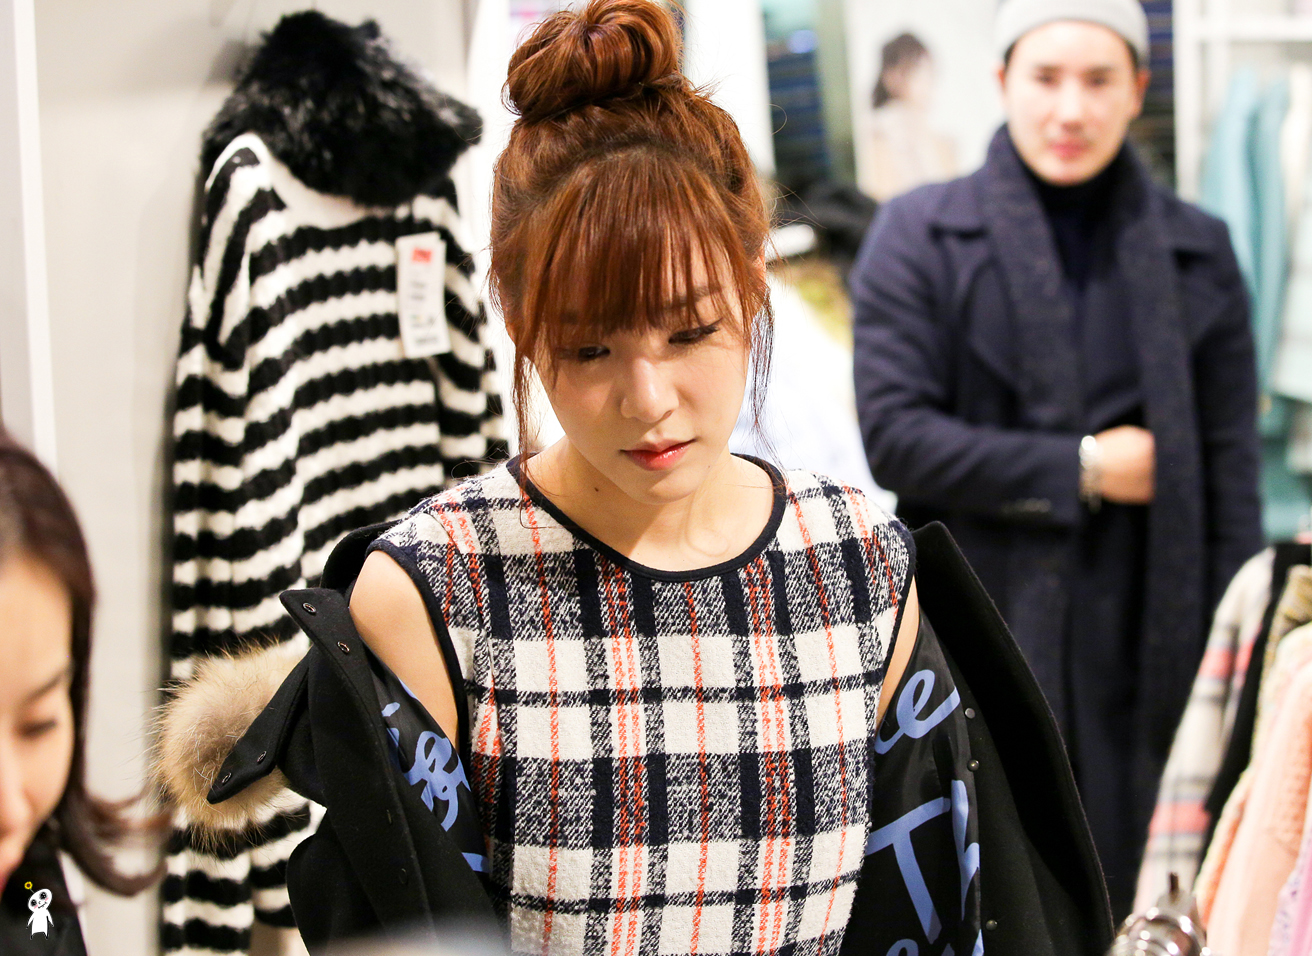 [PIC][28-11-2013]Tiffany ghé thăm cửa hàng "QUA" ở Hyundai Department Store vào trưa nay - Page 3 241FE43F52980CB22E0658